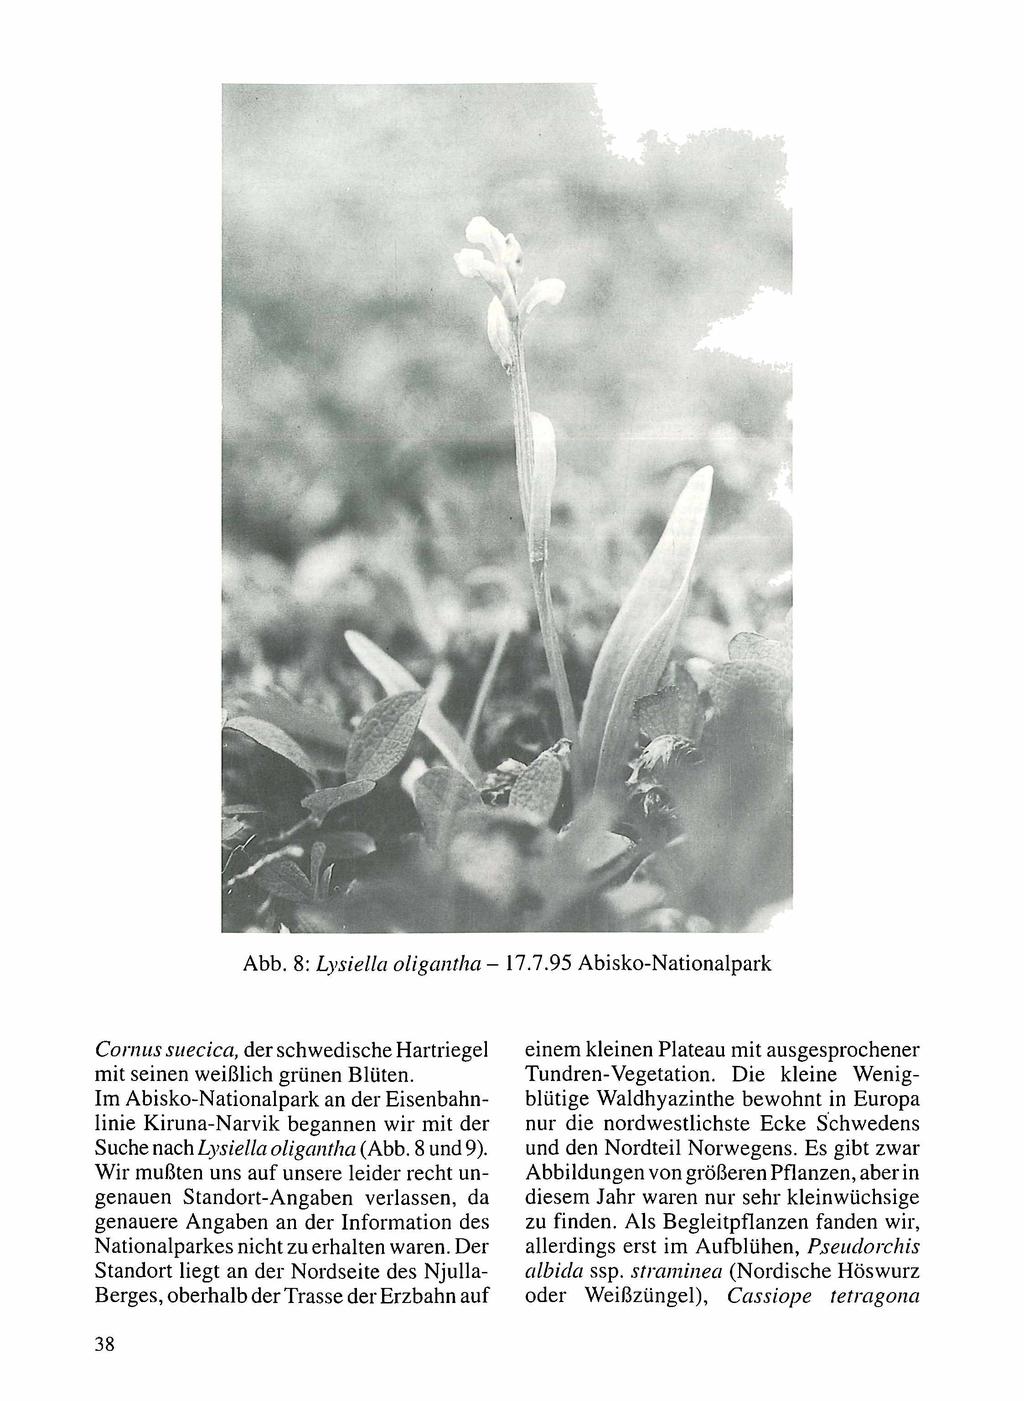 Abb. 8: Lysiella oligantha - 17.7.95 Abisko-Nationalpark Conms sitecica, der schwedische Hartriegel mit seinen weißlich grünen Blüten.